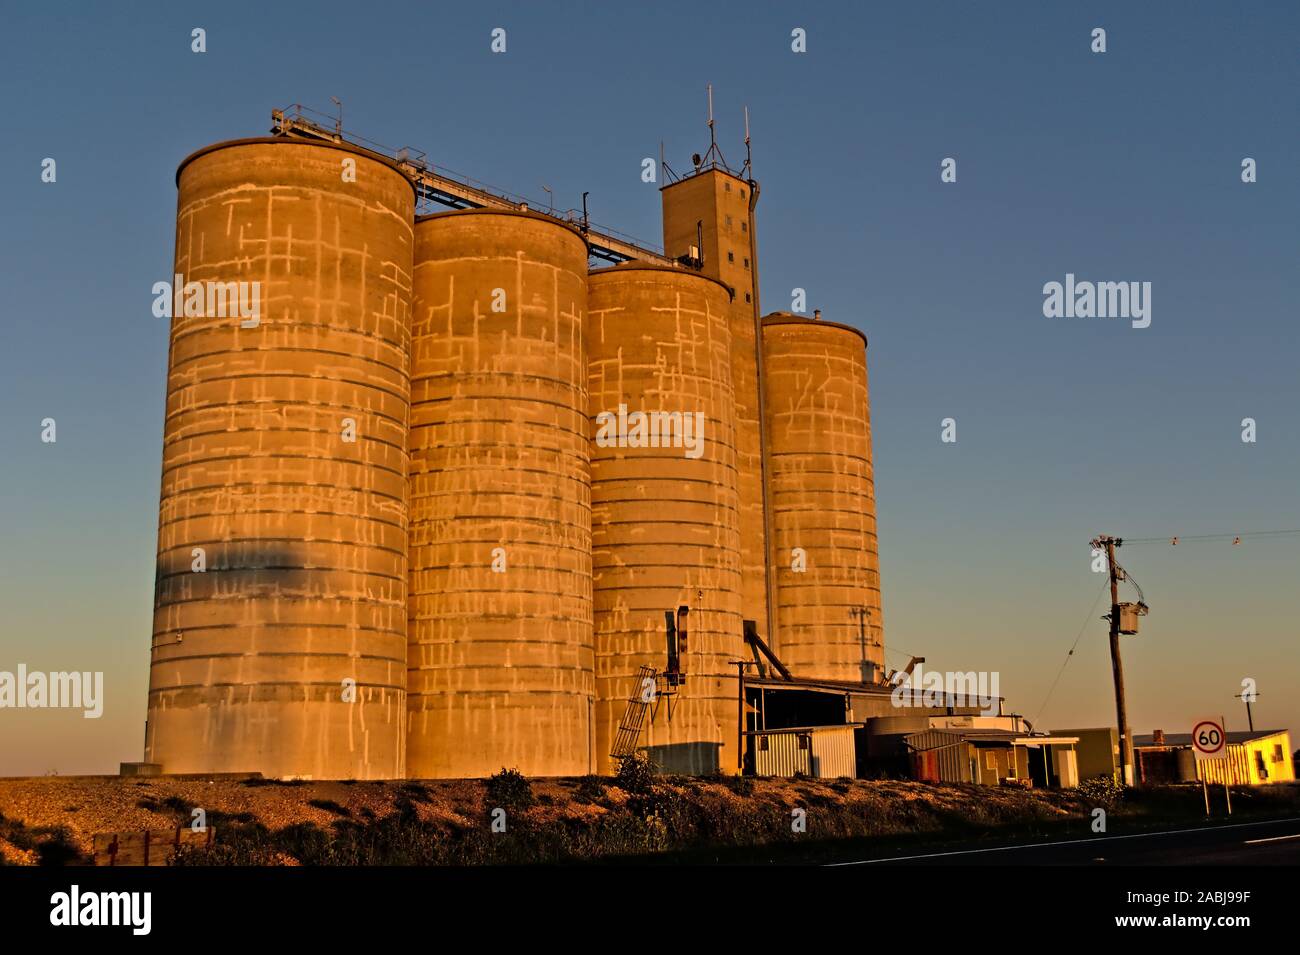 Grain silos in outback australia Stock Photo